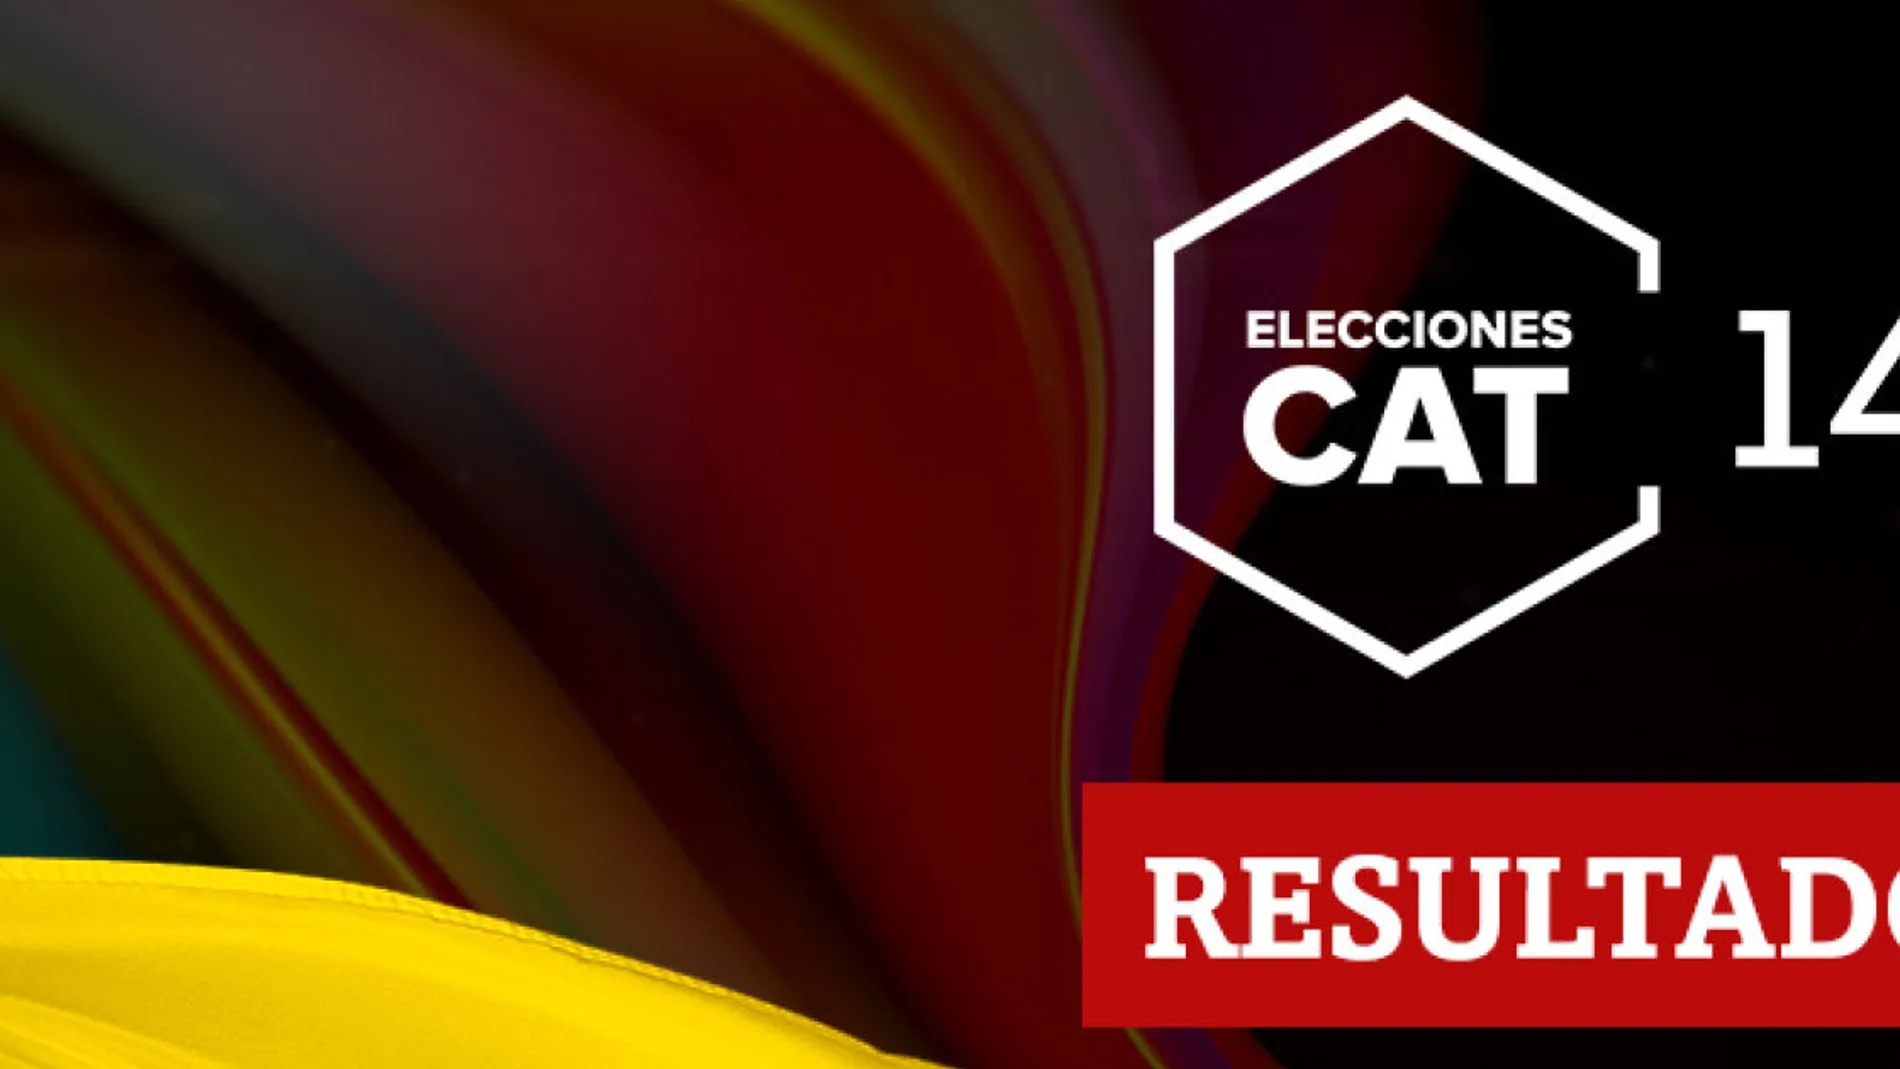 Resultados en Móra d'Ebre de las elecciones catalanas del 14F 2021